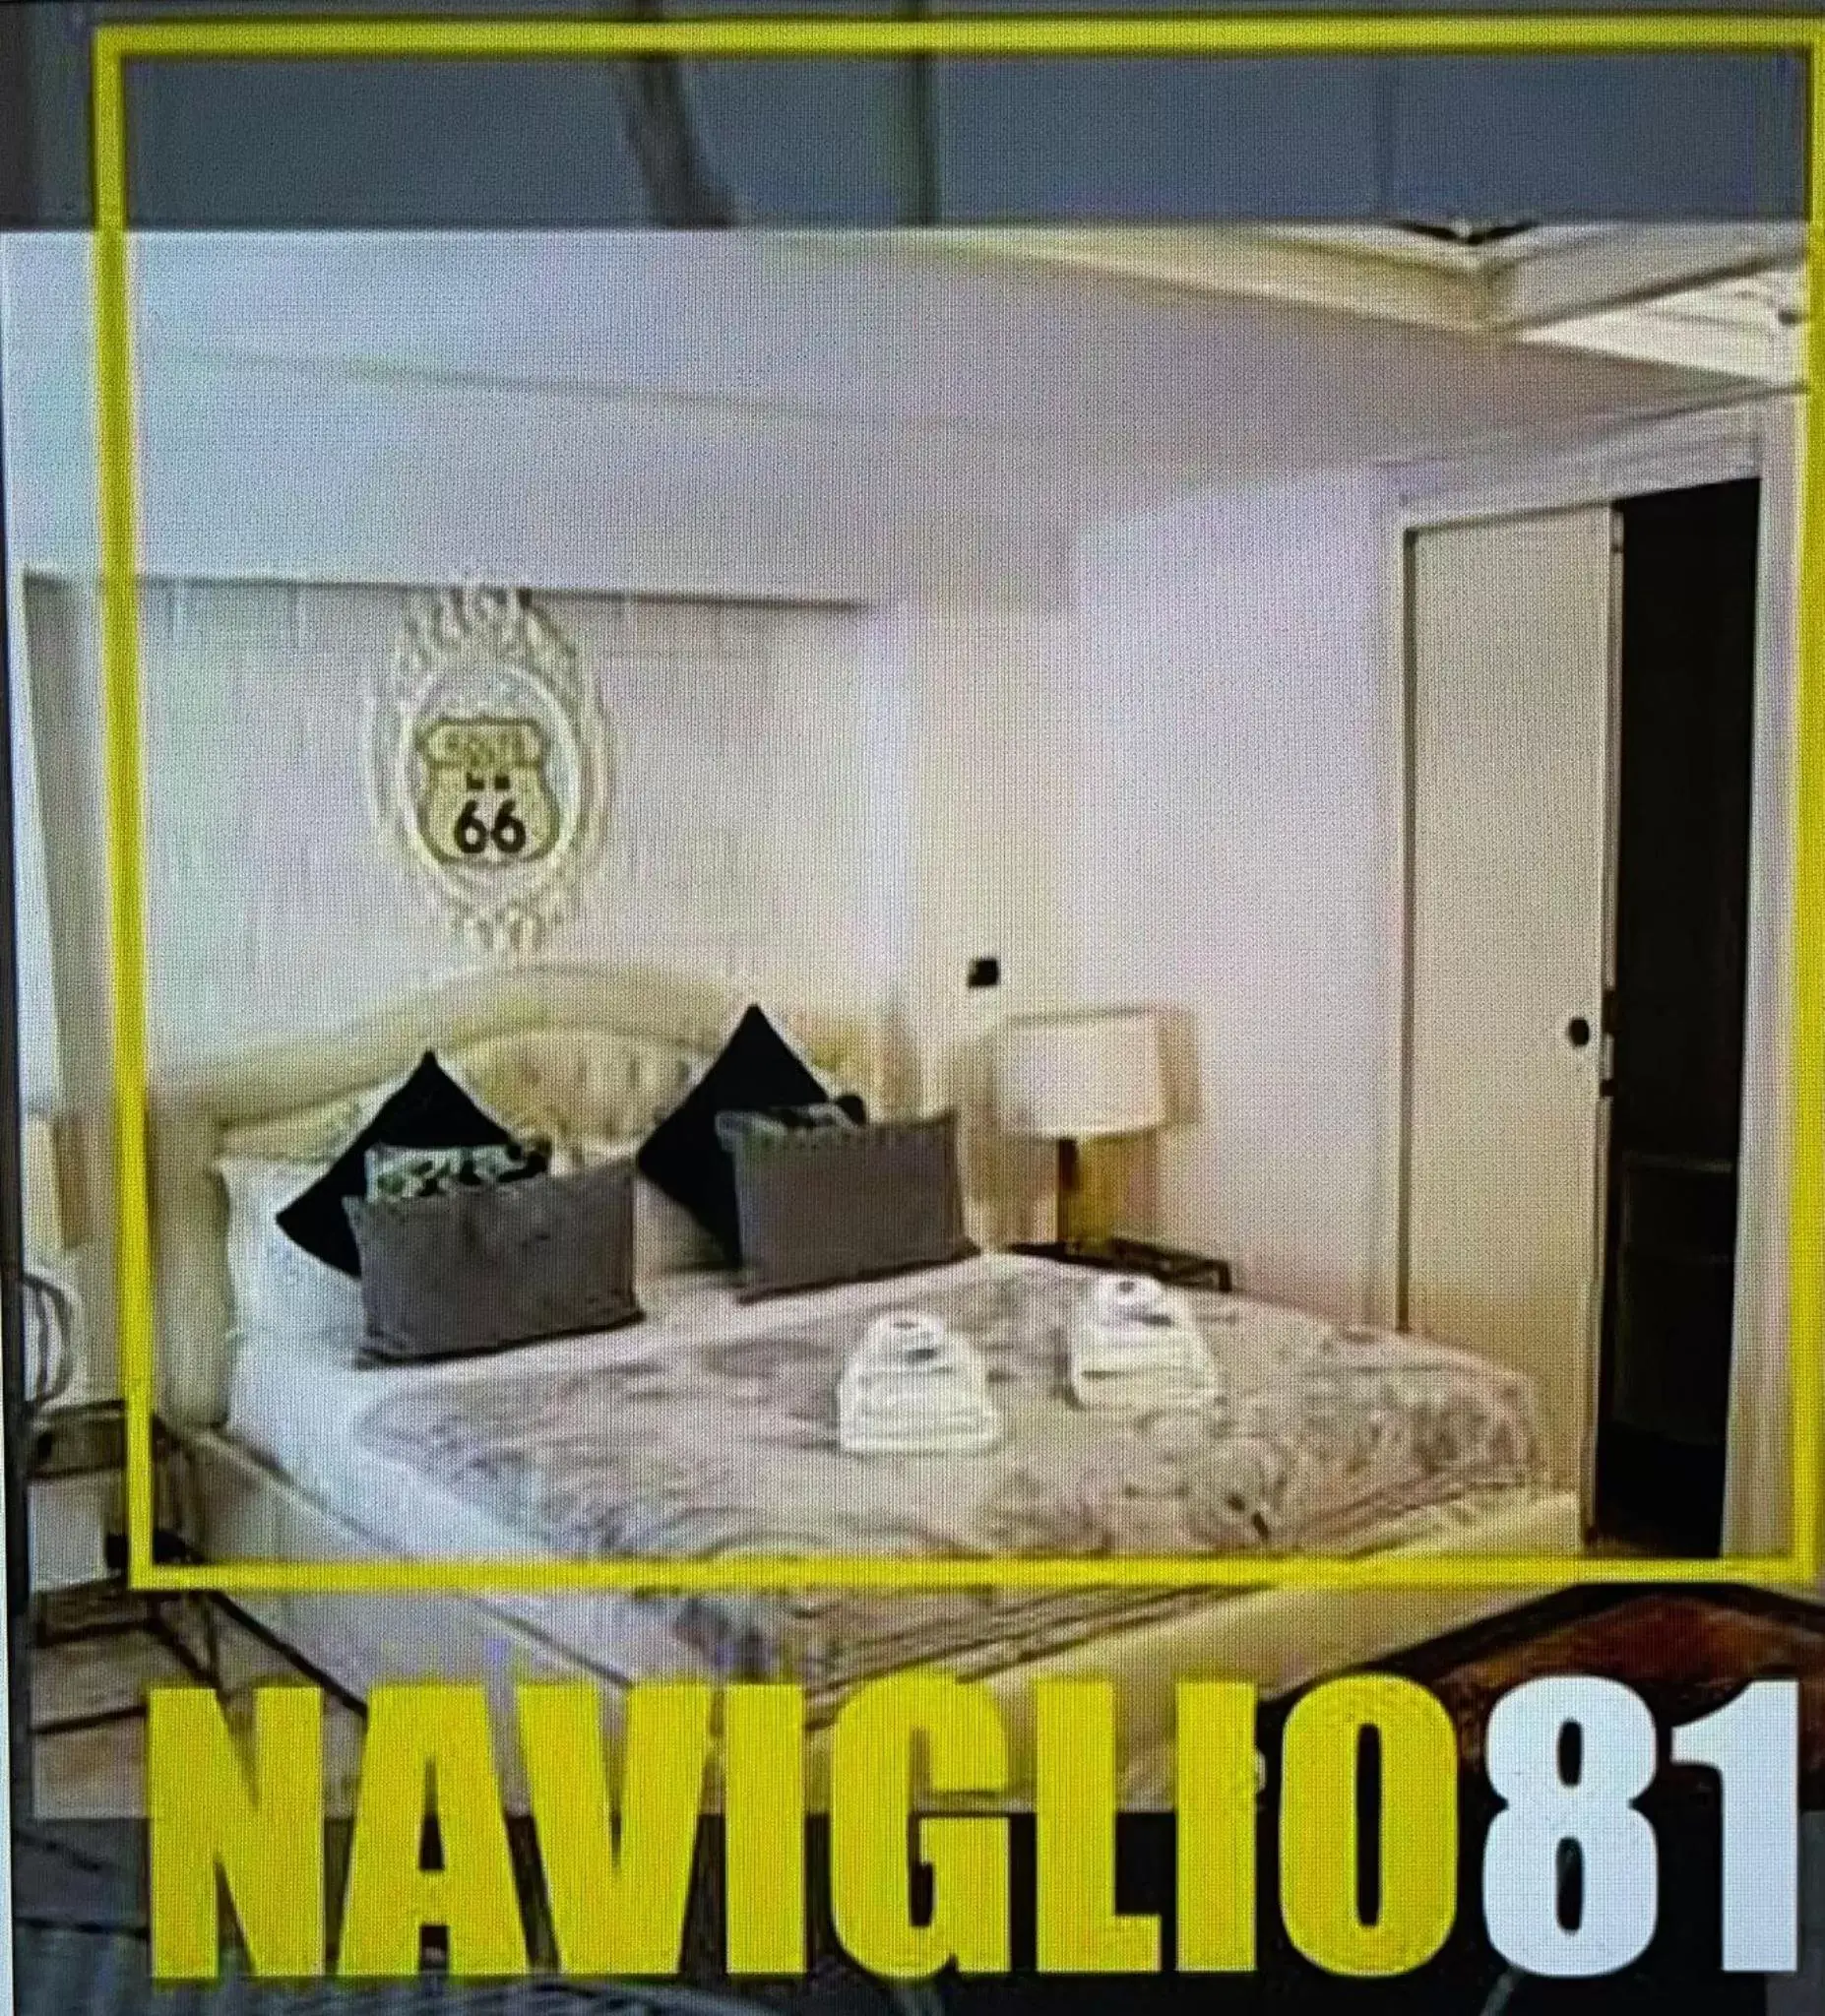 Bedroom in Naviglio81